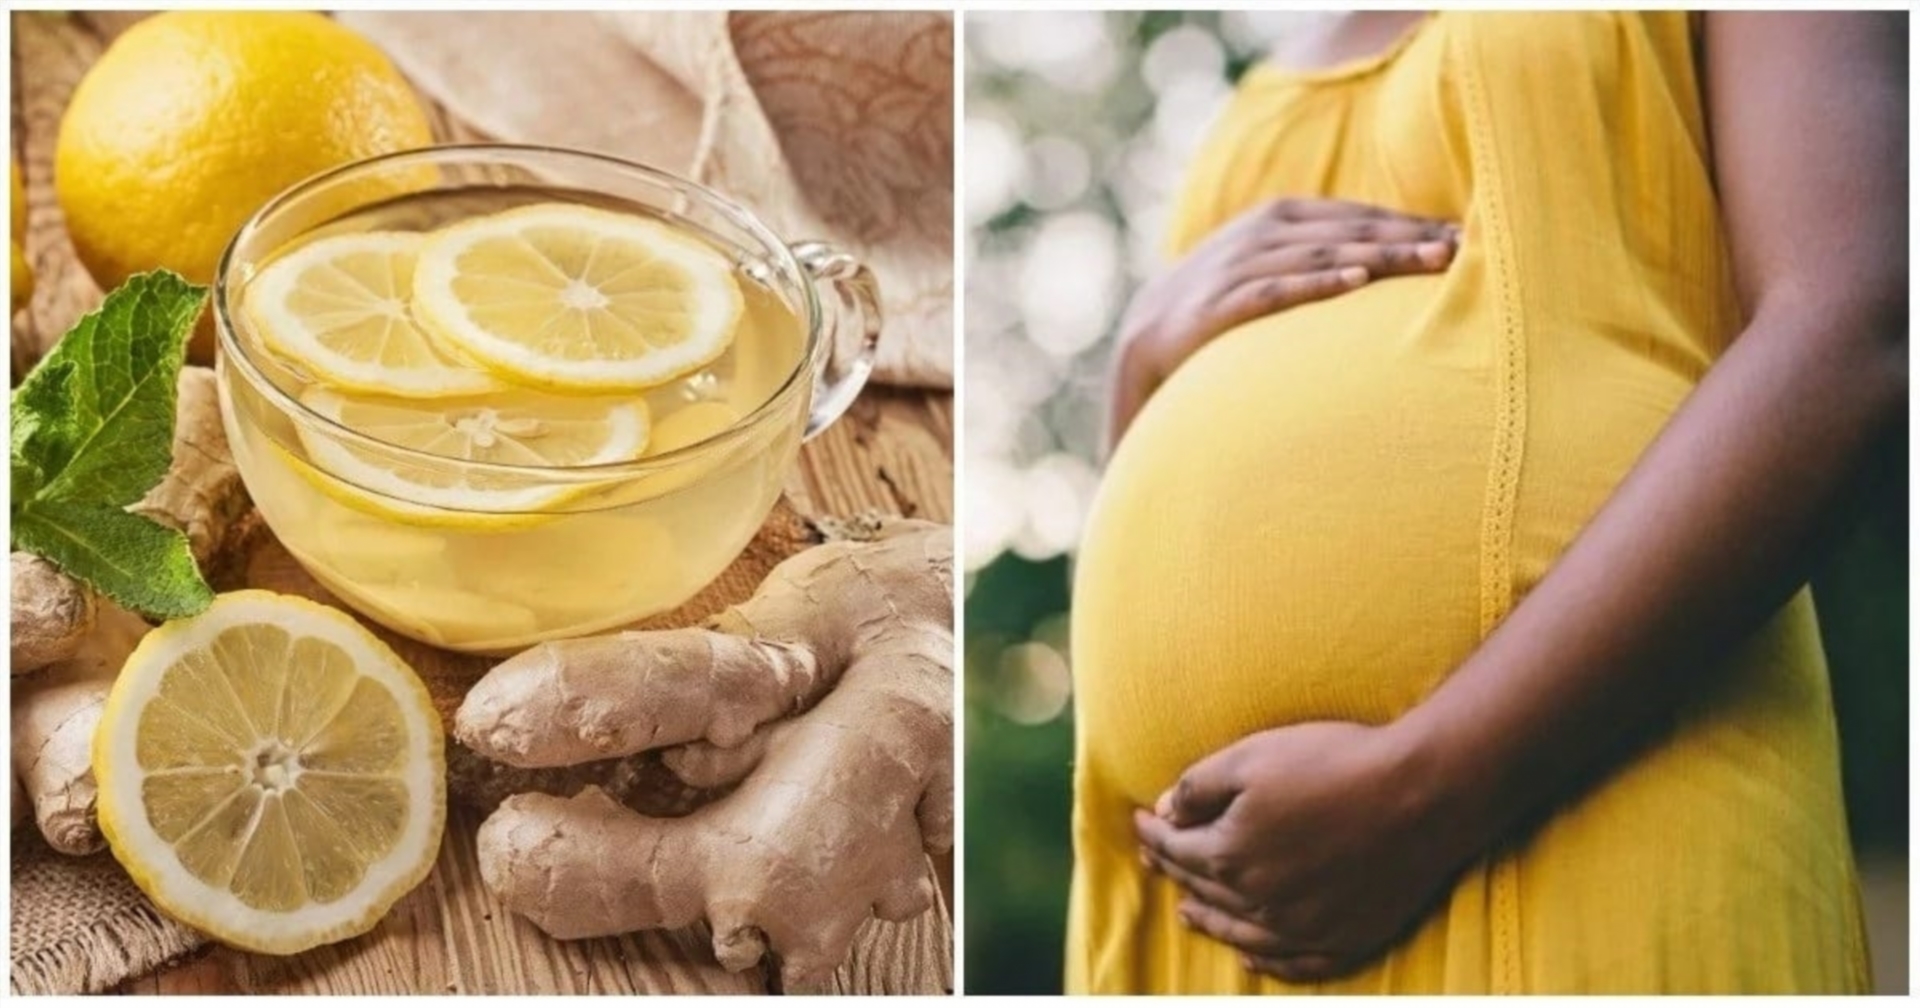 is lemon juice healthy during pregnancy guide